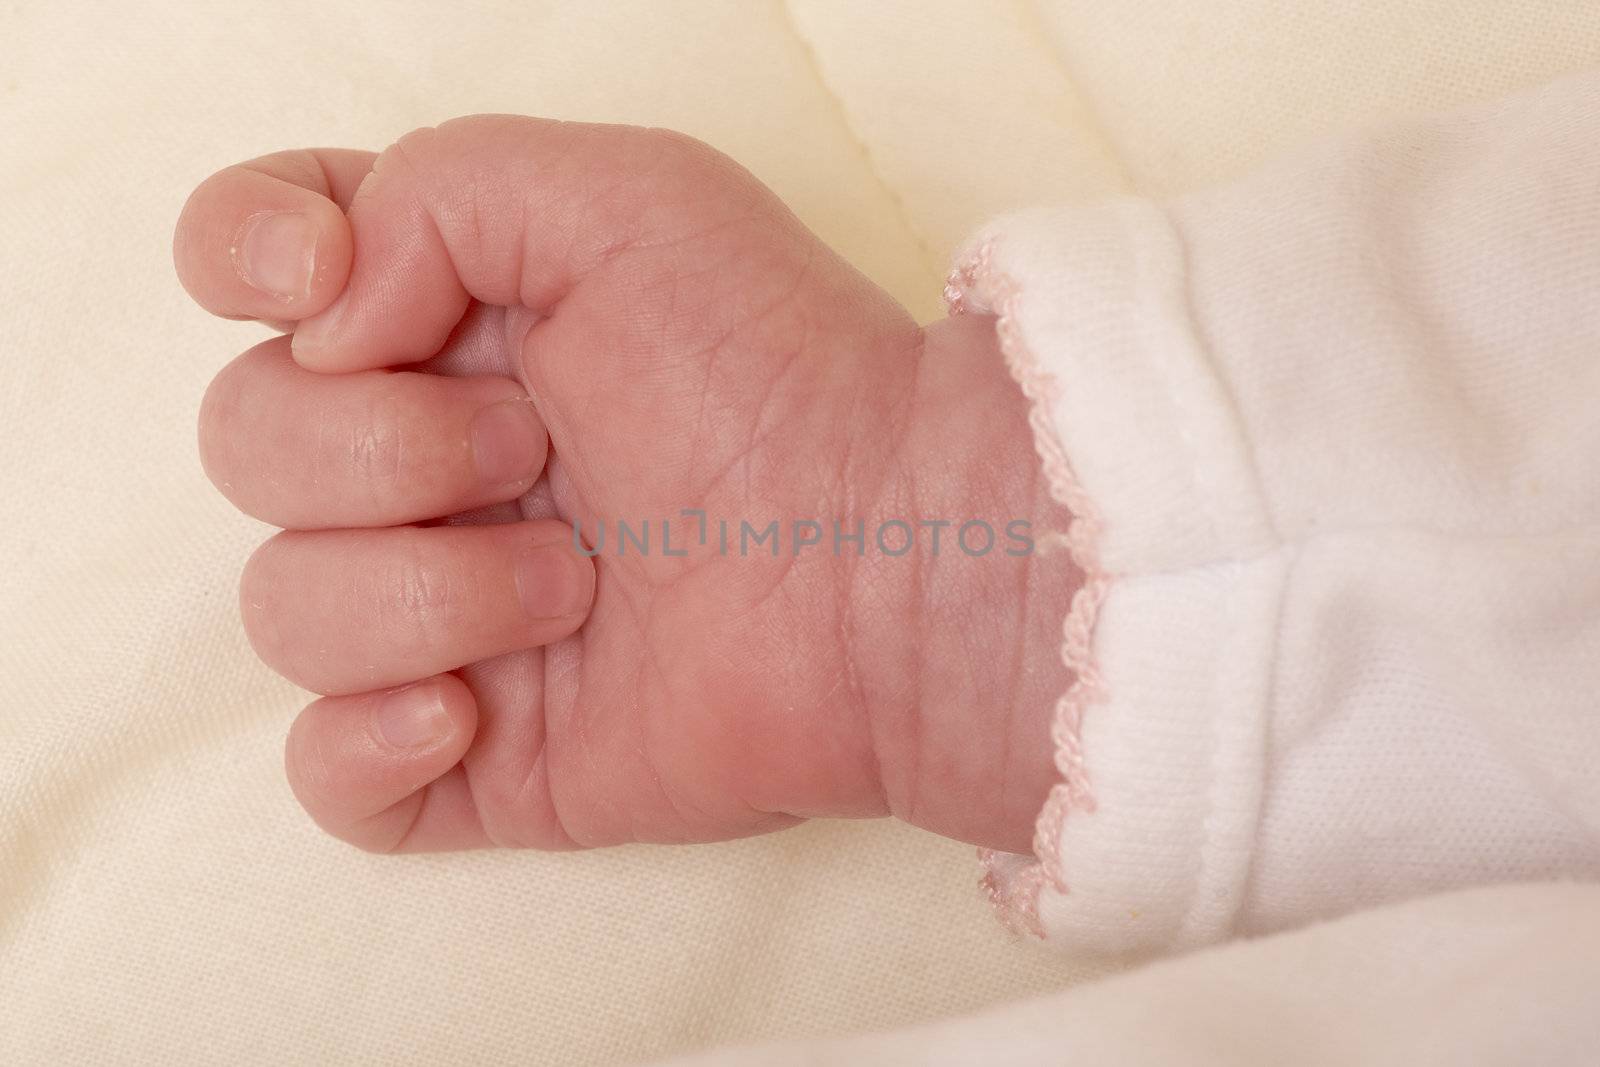 baby's hand